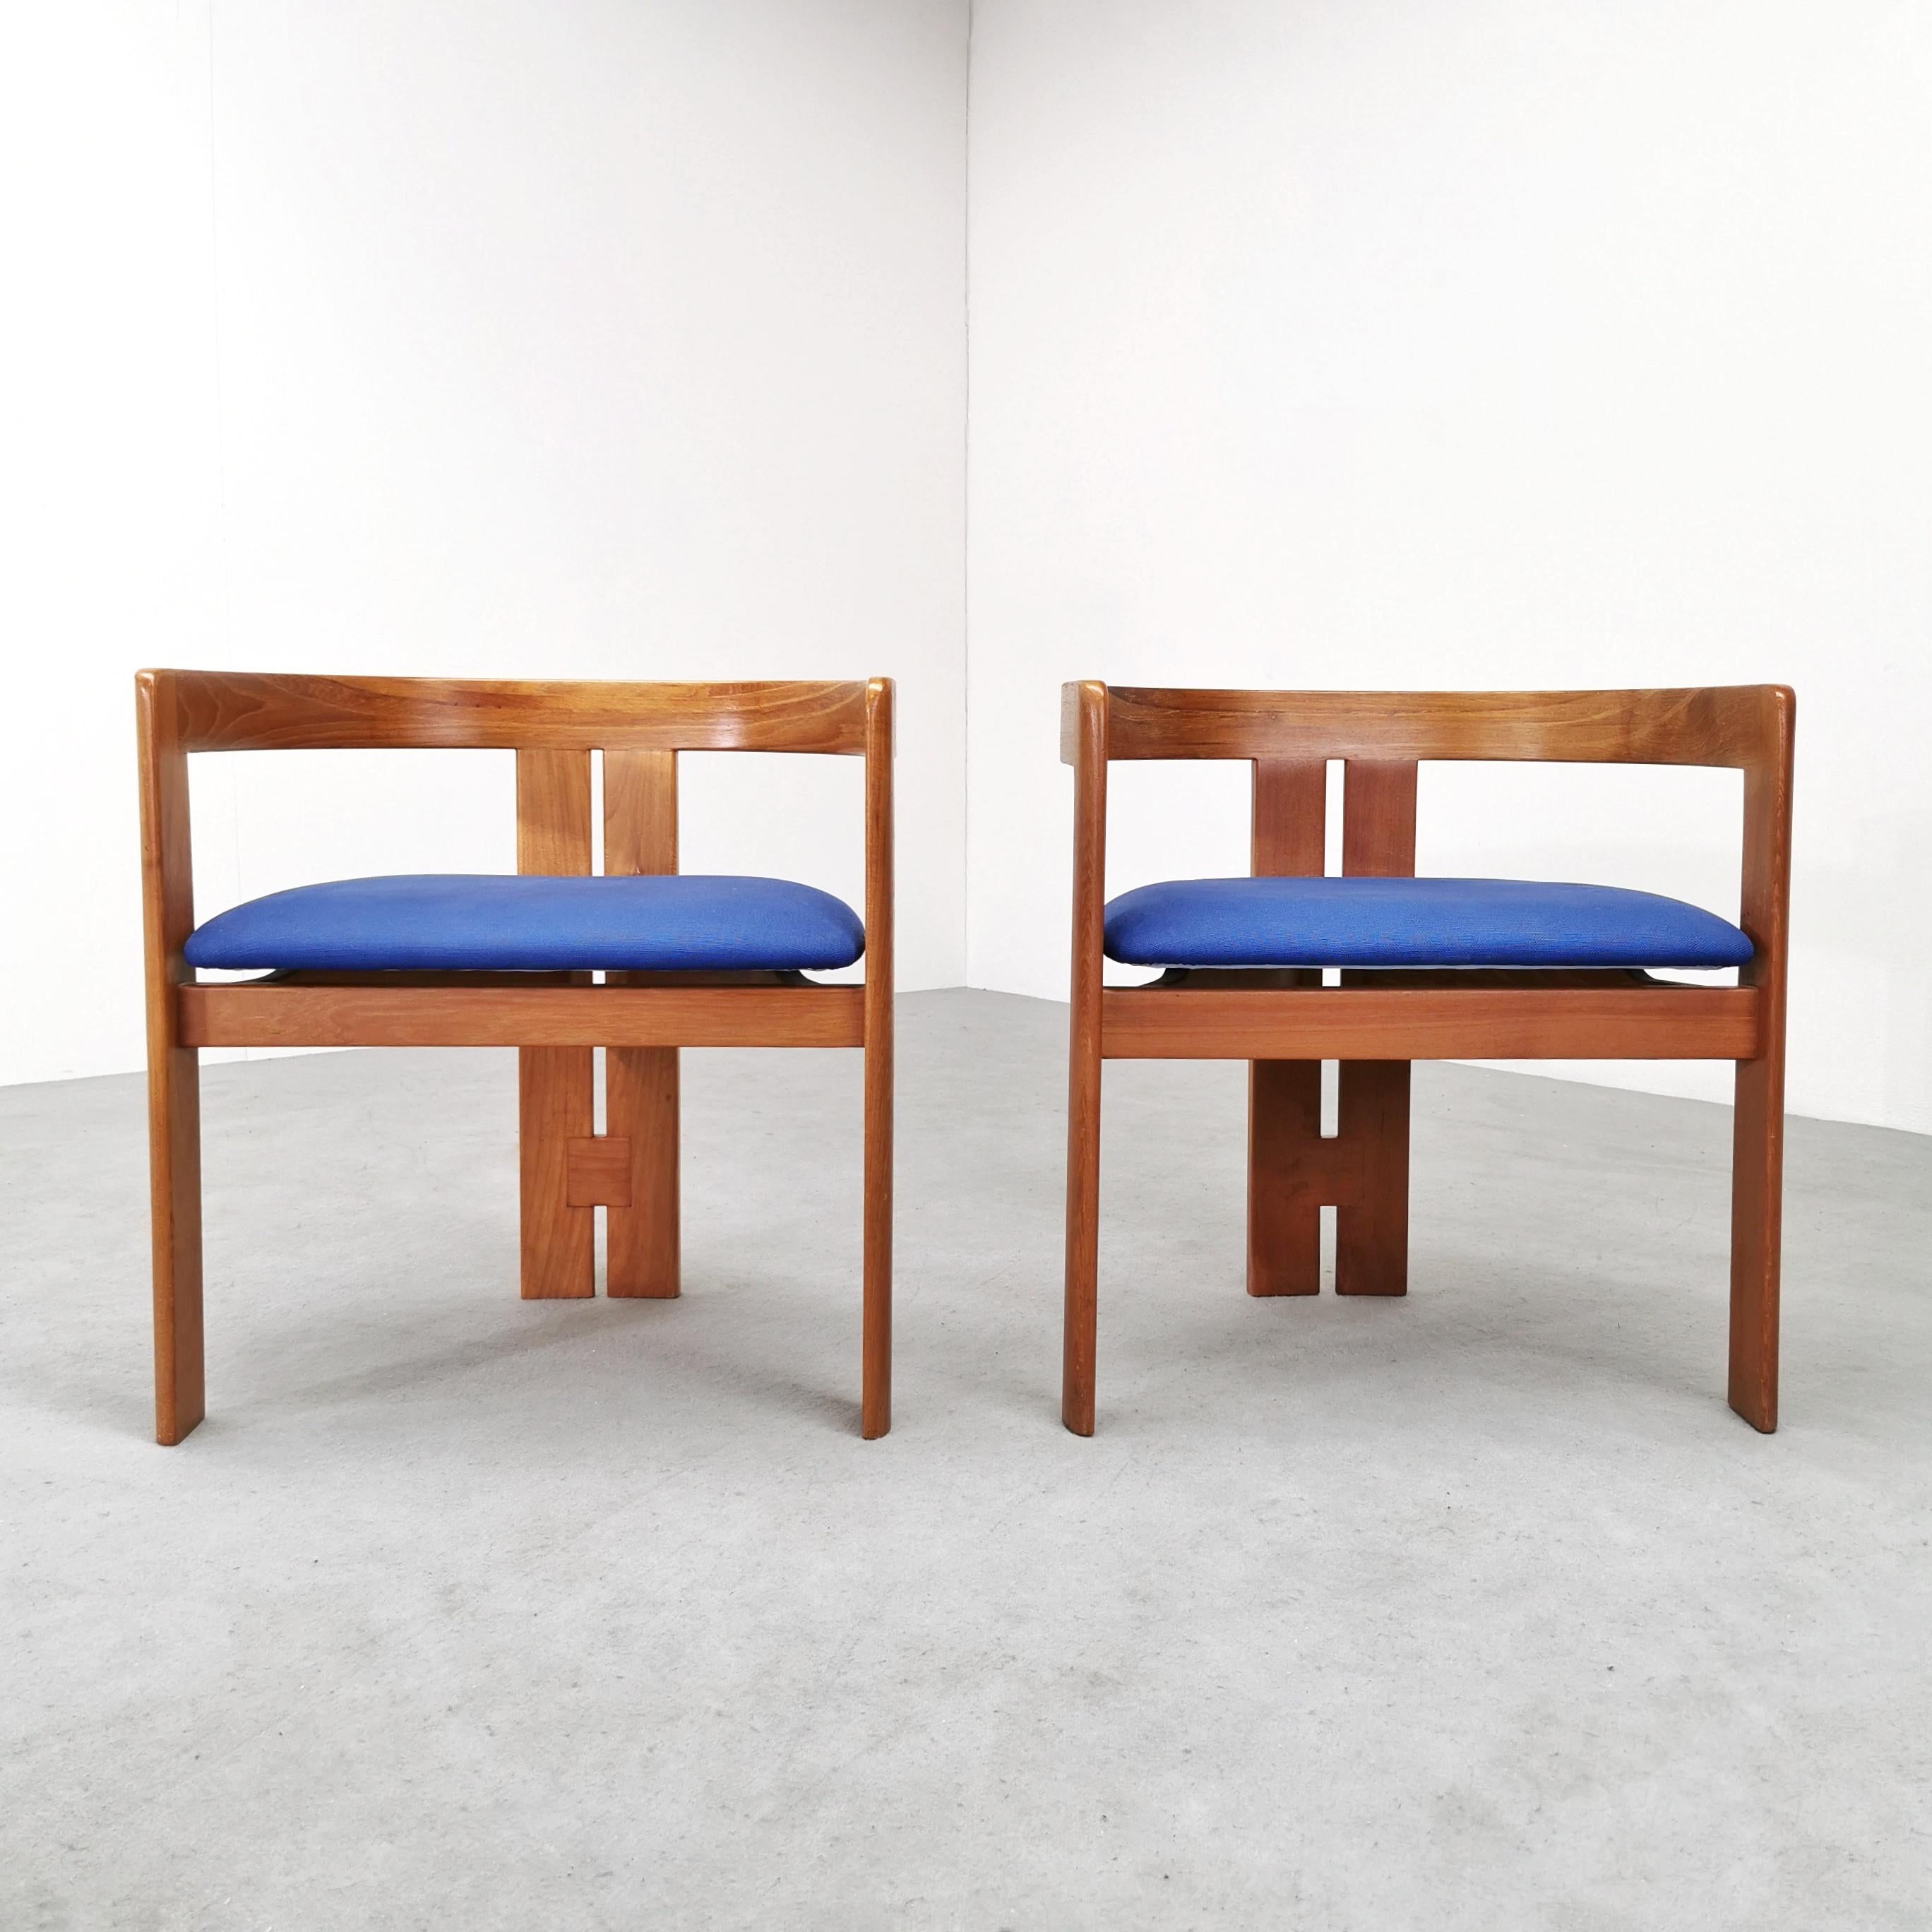 Paire de fauteuils modèle Pigreco conçus dans les années 1960 par Tobia Scarpa pour Gavina. Structure en bois clair et assise en tissu bleu clair. Les fauteuils sont en excellent état.